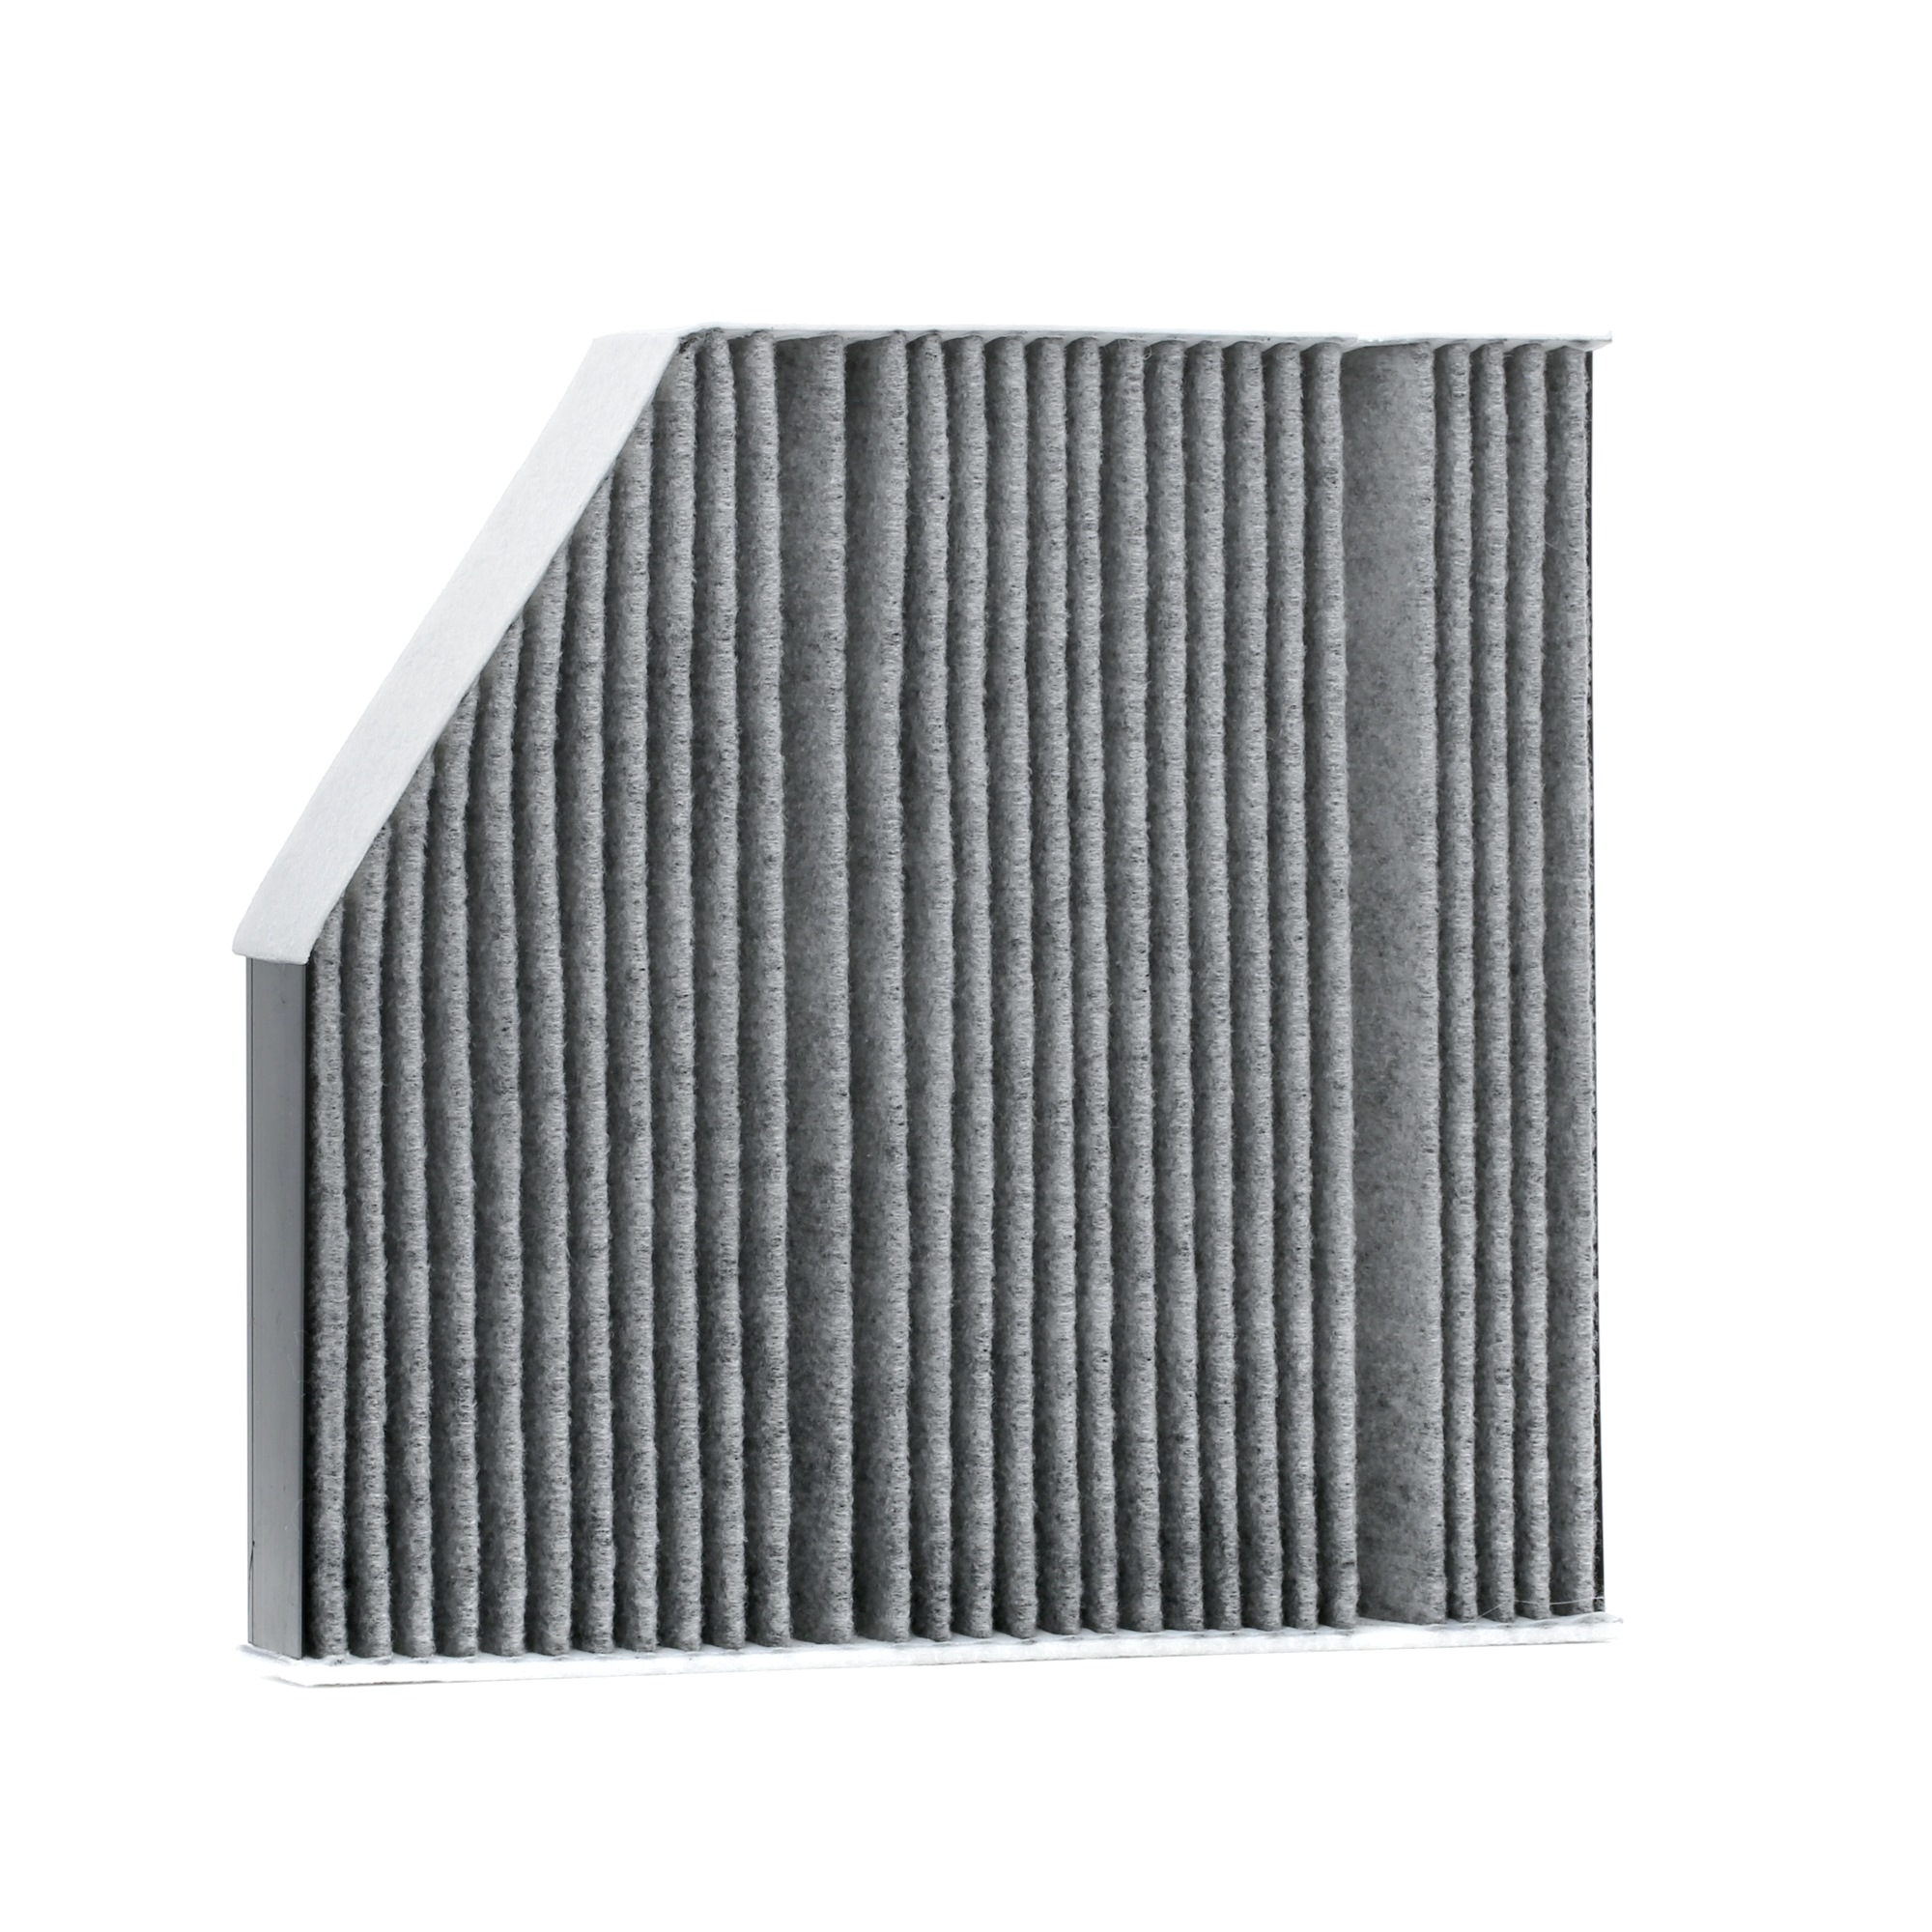 FEBI BILSTEIN 105817 Filtro abitacolo Cartuccia filtro, Filtro al carbone attivo, 260 mm x 244 mm x 40 mm